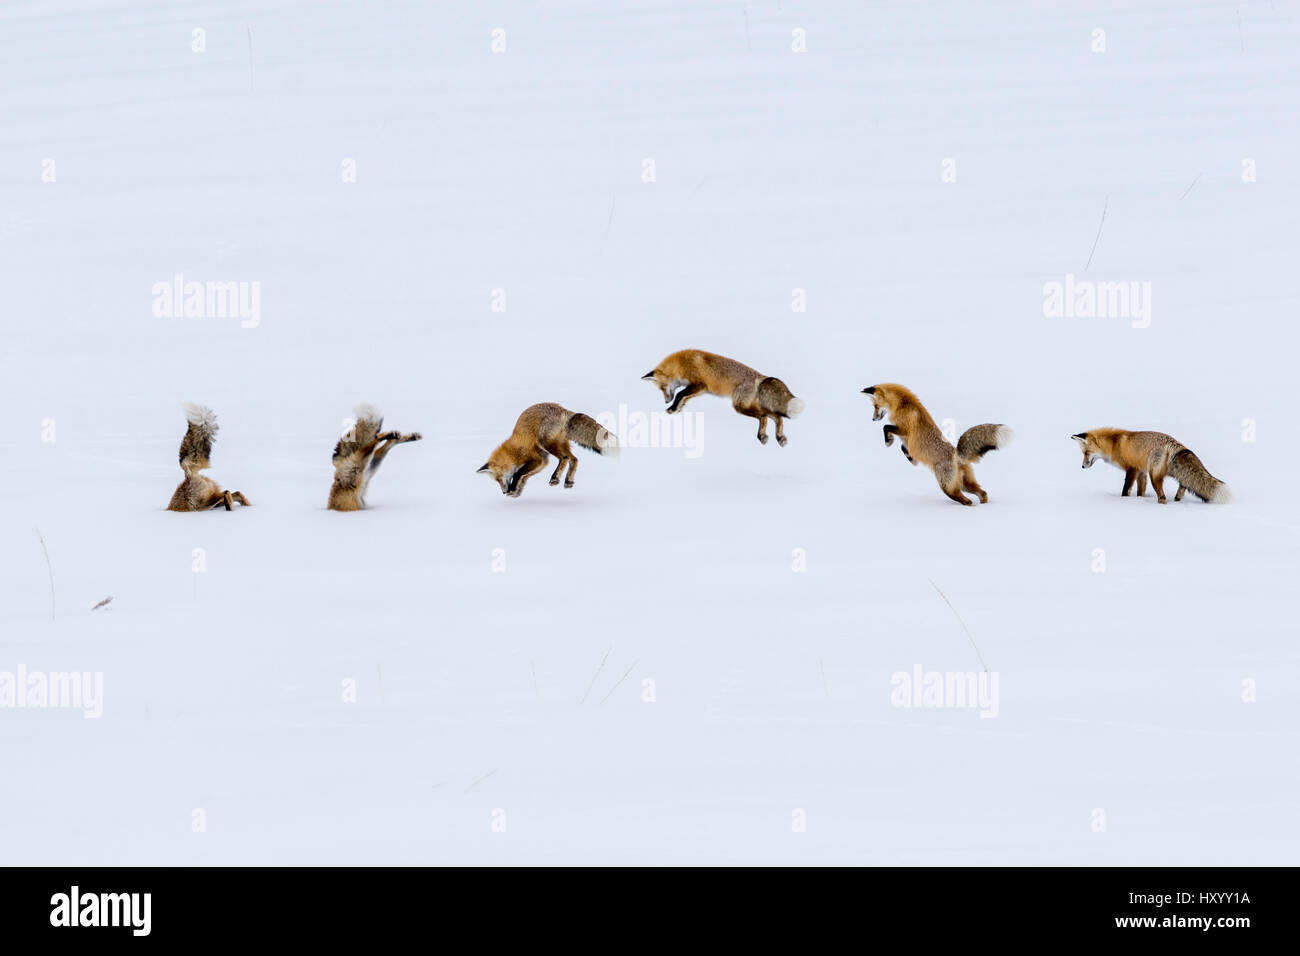 Red Fox (Vulpes vulpes) " ora " diving a caccia di roditori. Hayden Valley, il Parco Nazionale di Yellowstone, Wyoming negli Stati Uniti. Gennaio. Immagine composita. Foto Stock